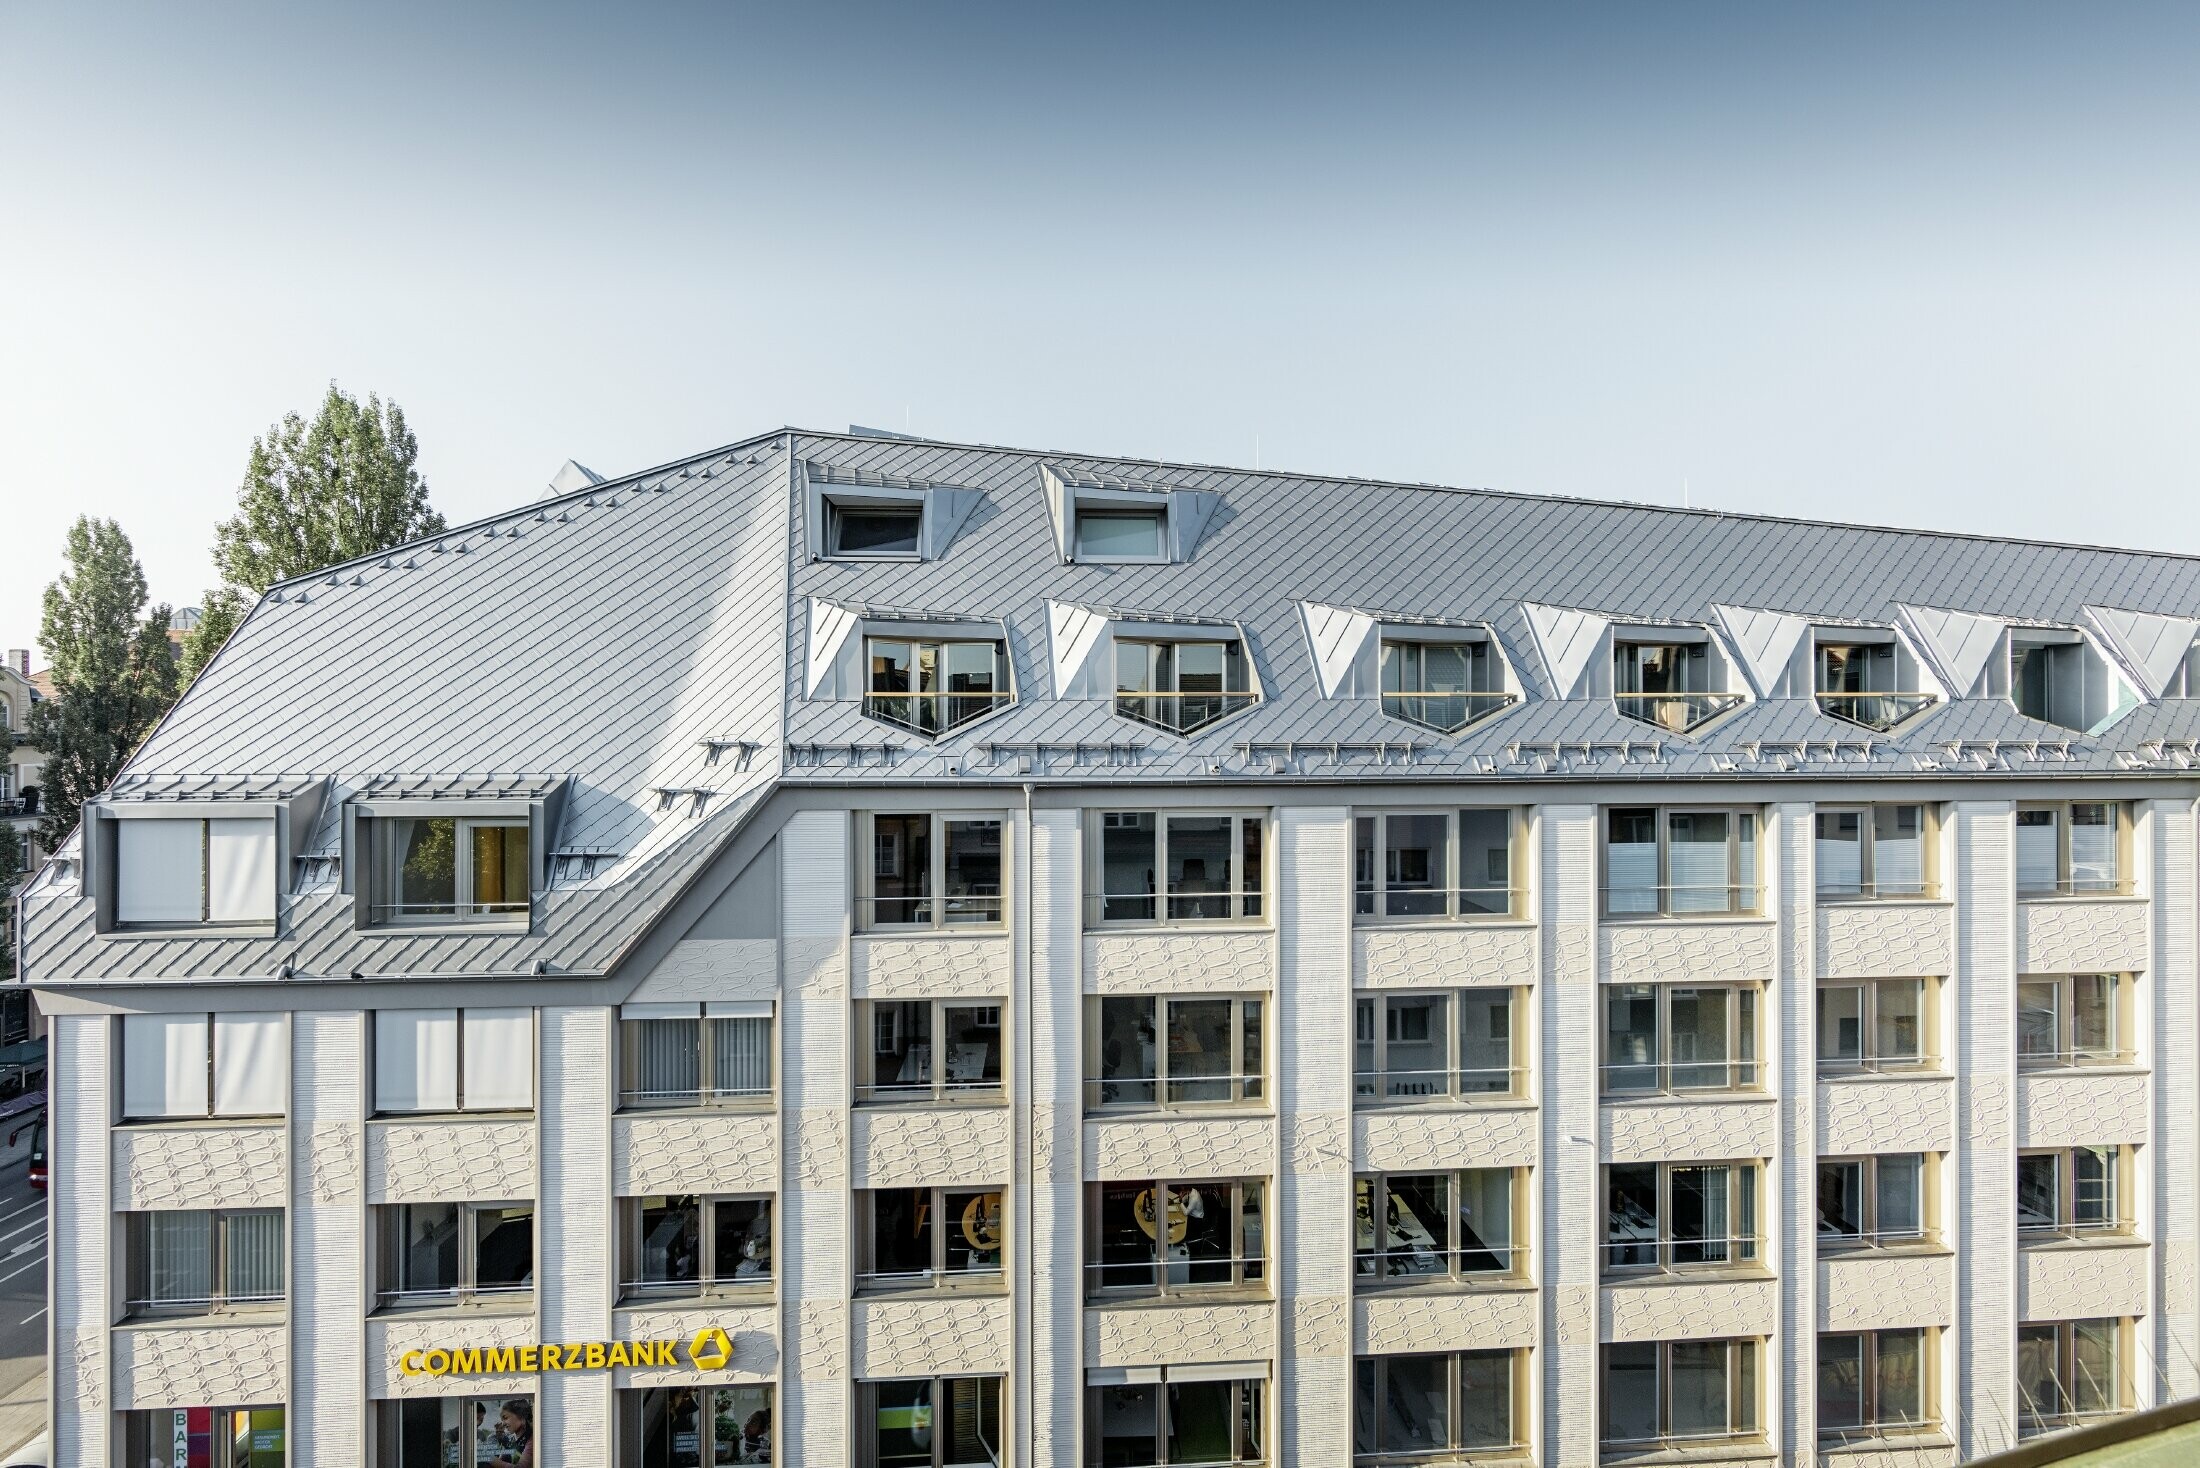 Appartements mansardés rénovés et dotés de spacieuses mezzanines, aménagés dans un immeuble d’habitation et de commerces munichois de la Leopoldstraße, à l’angle de la Hohenzollernstraße — Couverture de toit réalisée avec des losanges de toiture PREFA